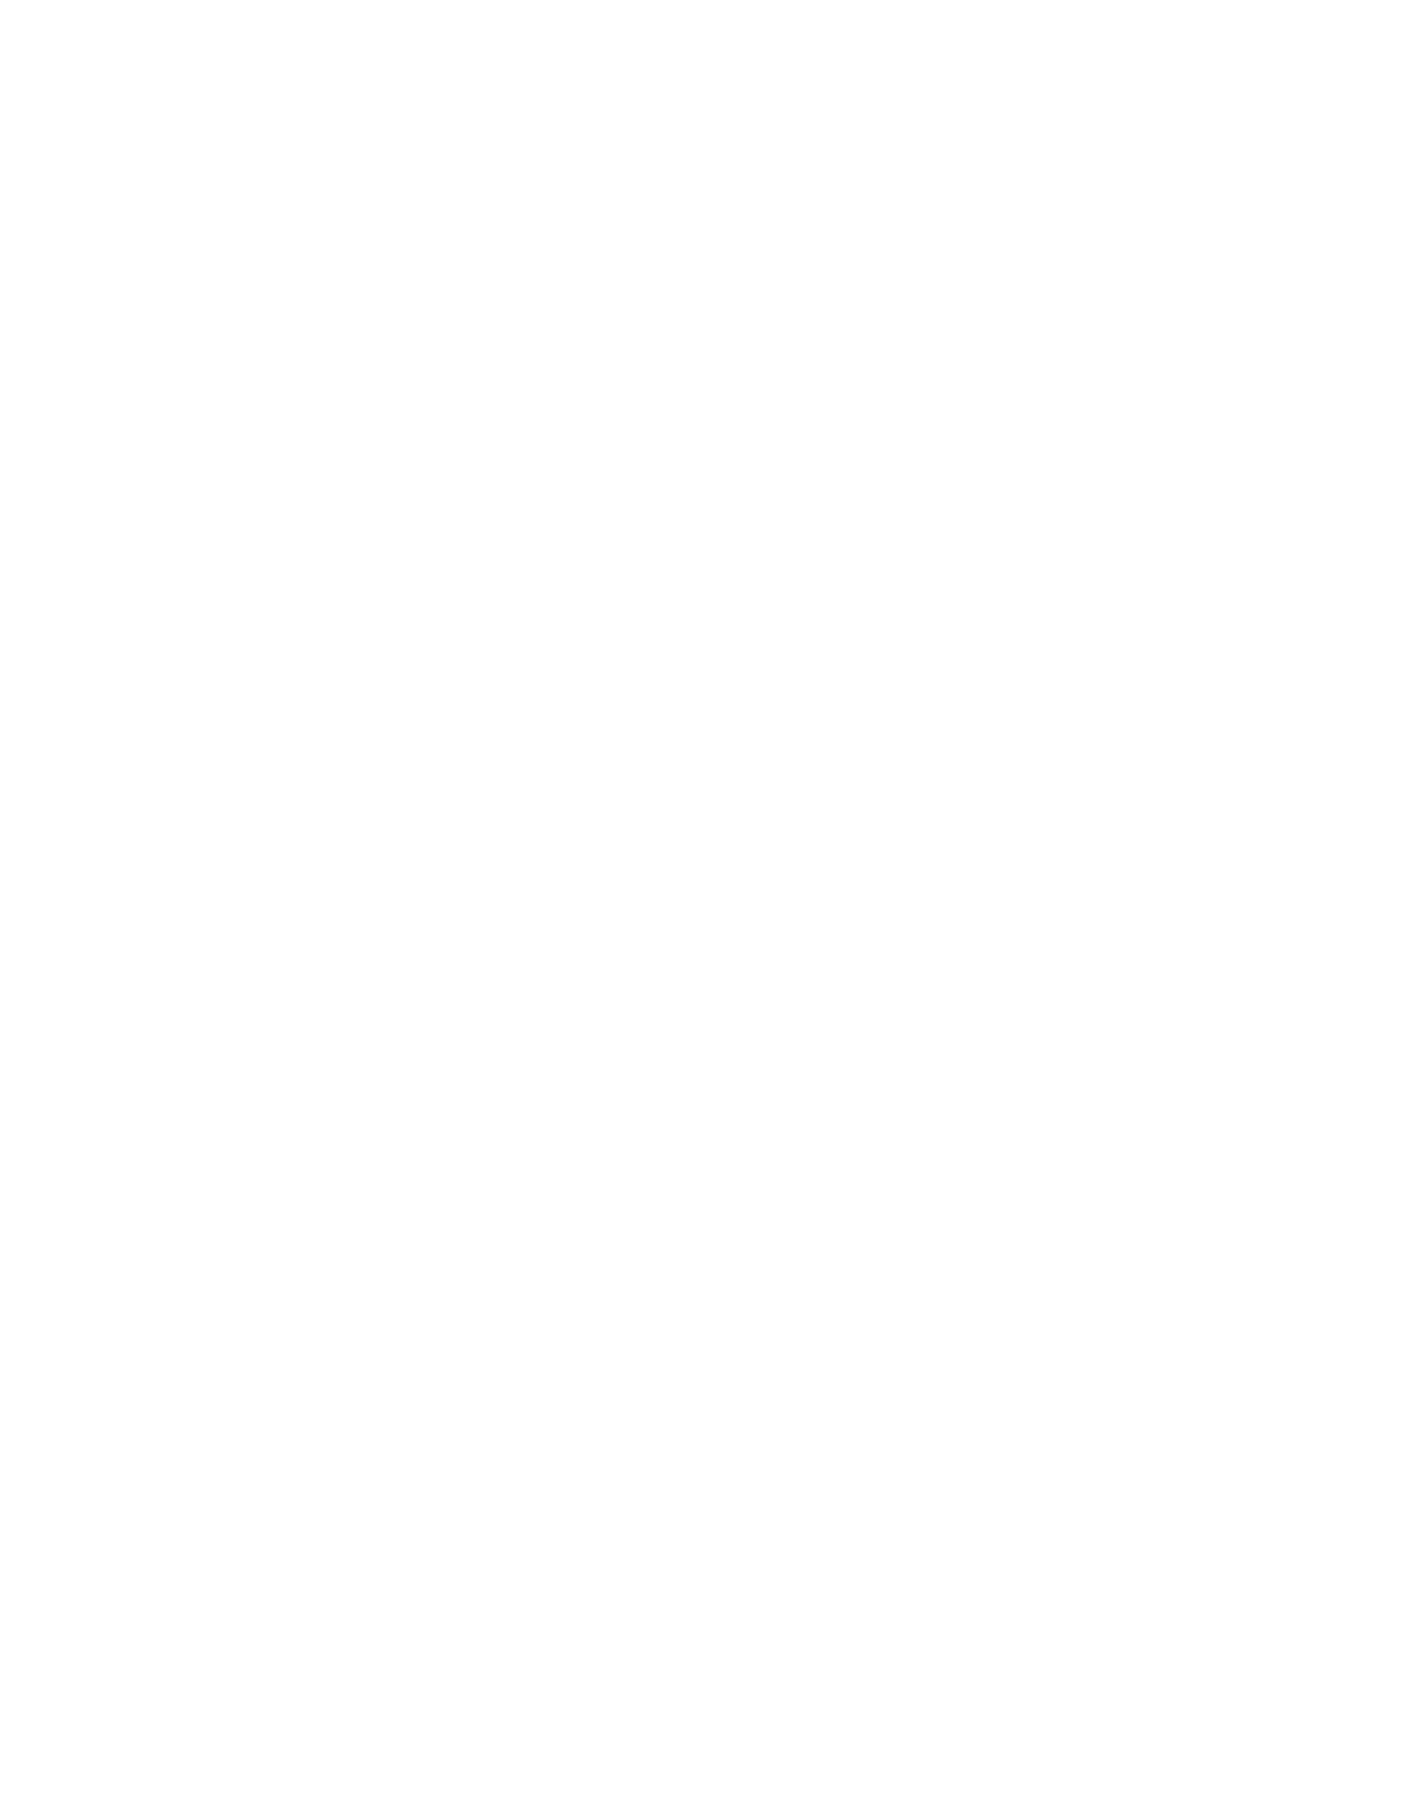 Imagine Rotary - Horizontal - Black